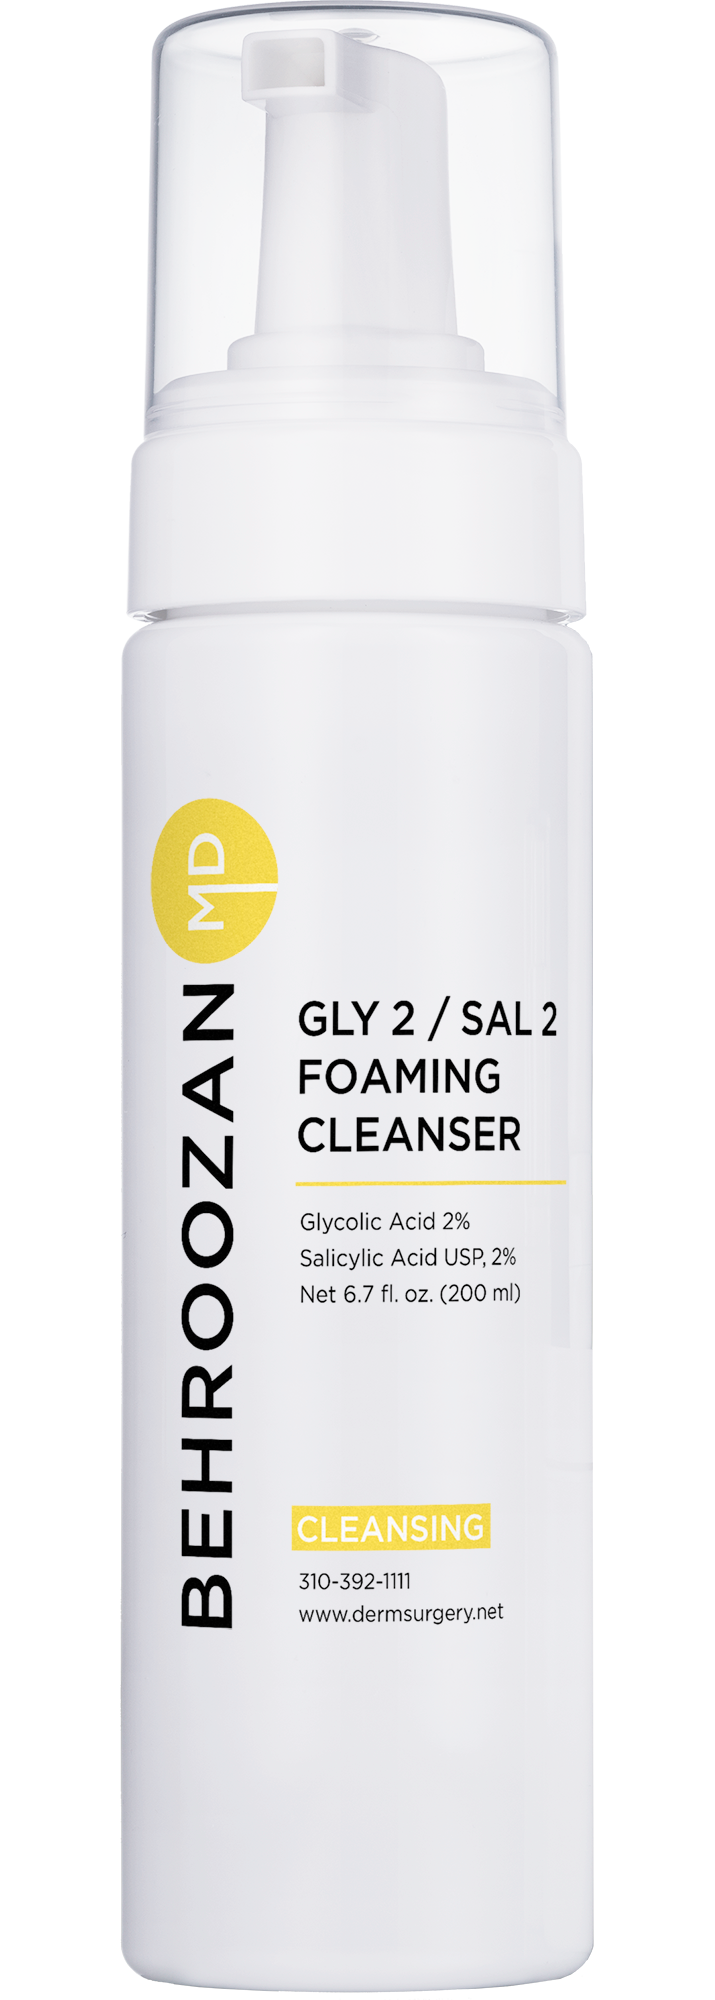 Gly 2/ Sal 2 Foaming Cleanser